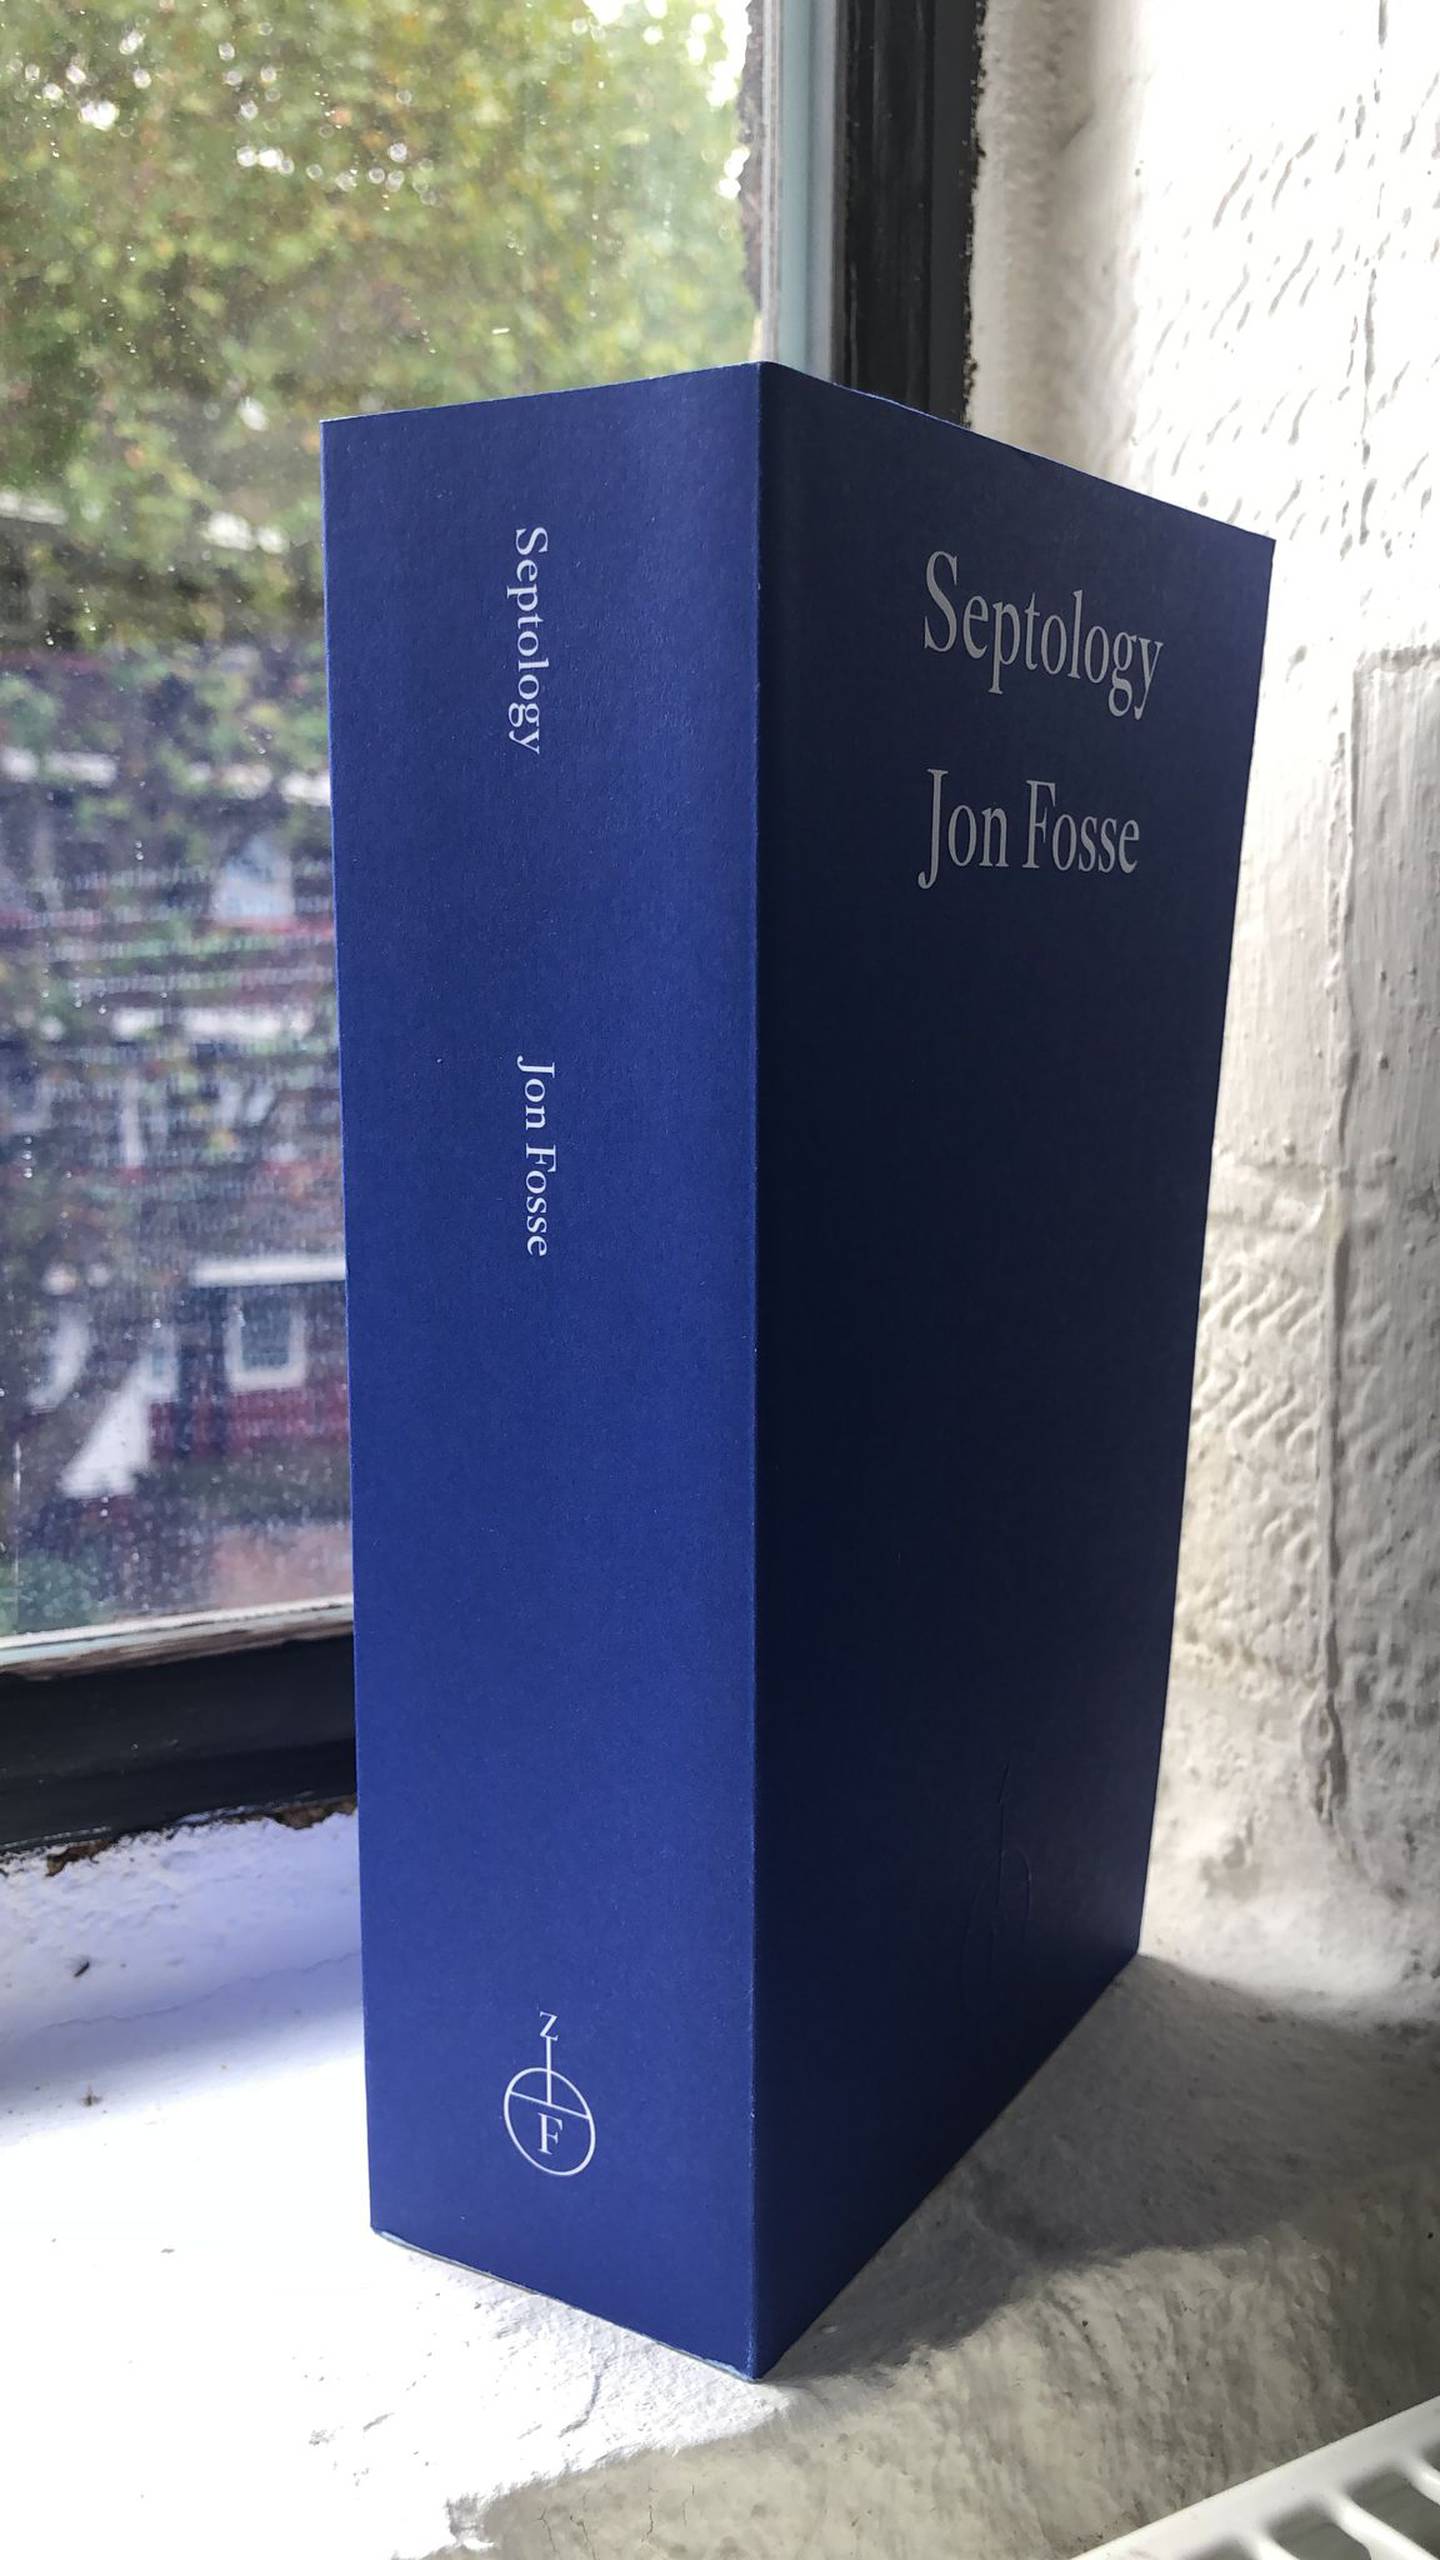 'Septology' es una obra colosal. En esta edición aparecen sus tres tomos compilados. Foto: Amazon